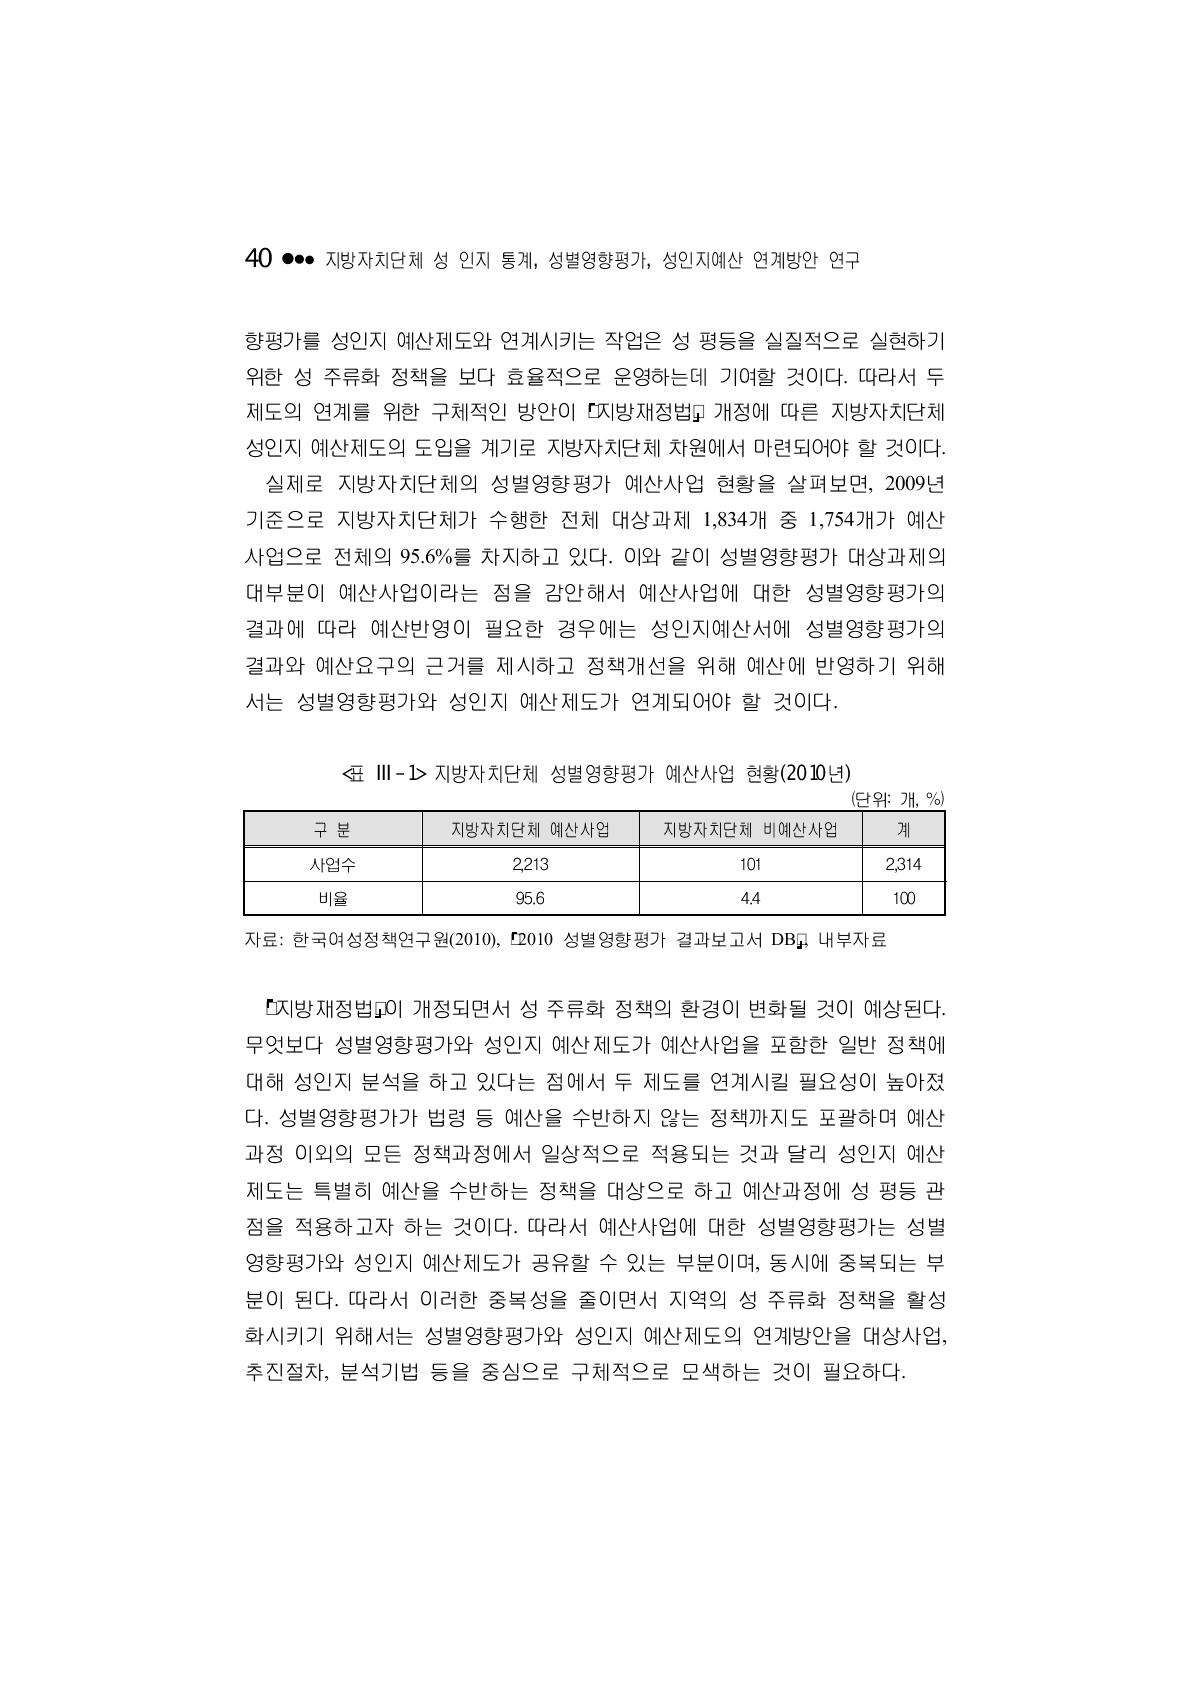 지방자치단체 성별영향평가 예산사업 현황(2010년)